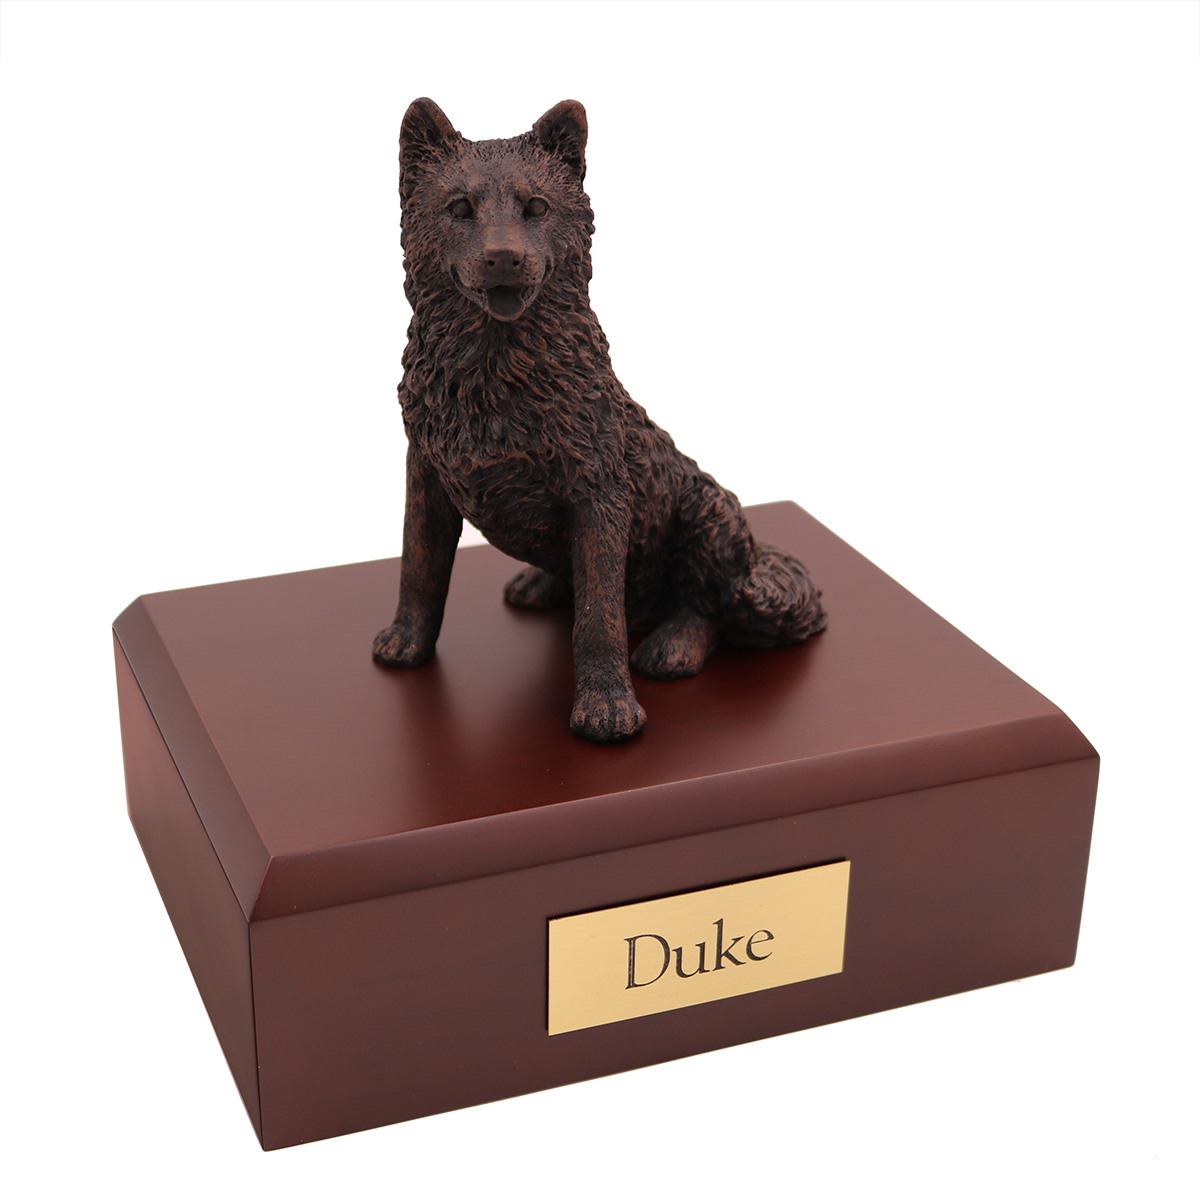 Dog, Husky, Bronze - Figurine Urn